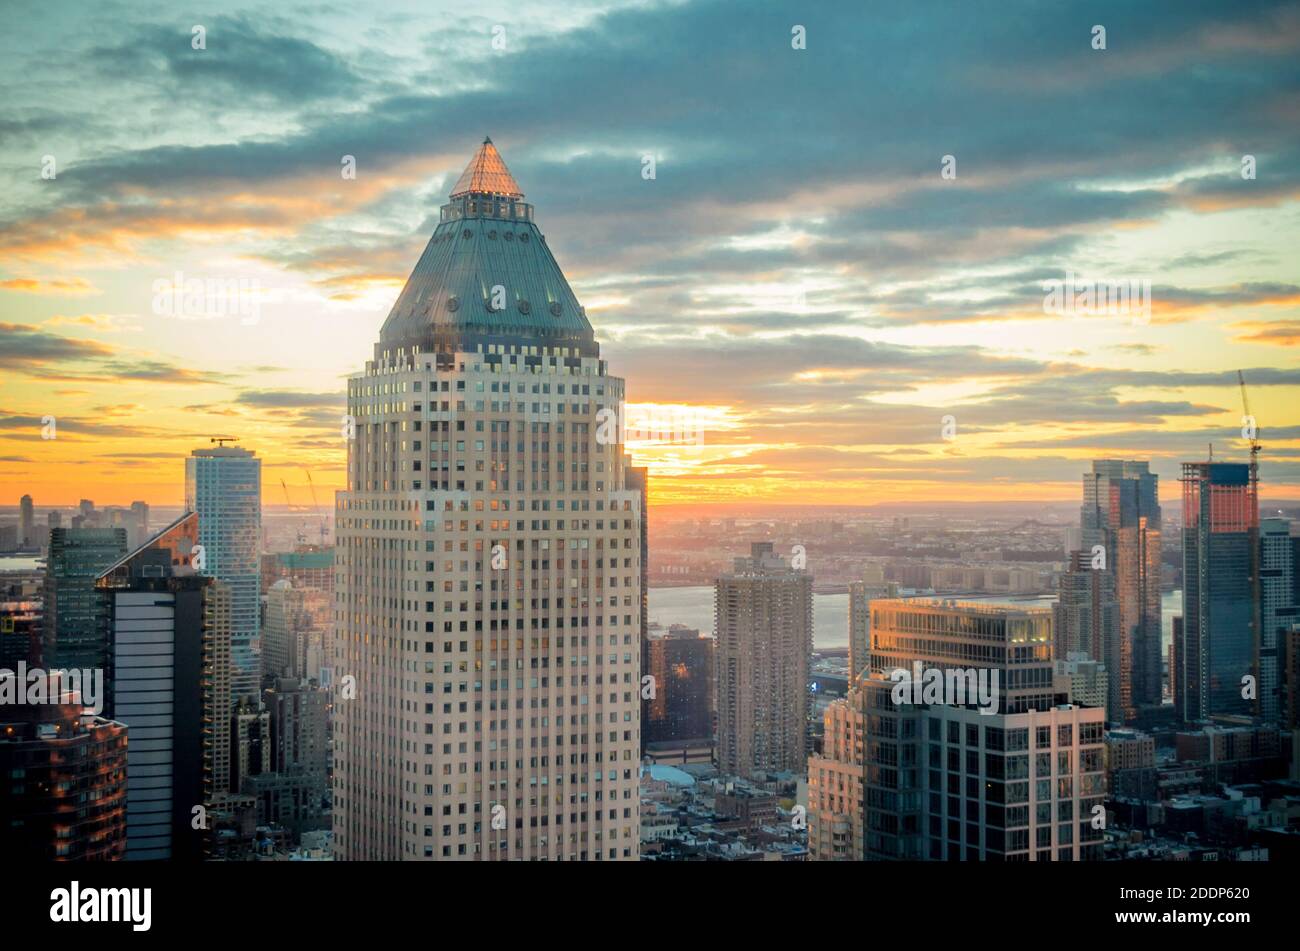 Luftaufnahme von Gebäuden, Wolkenkratzern und Türmen in Manhattan New York City bei Sonnenuntergang, Hudson River & Jersey City im Hintergrund. Wunderschöne Sky-Farben. Stockfoto